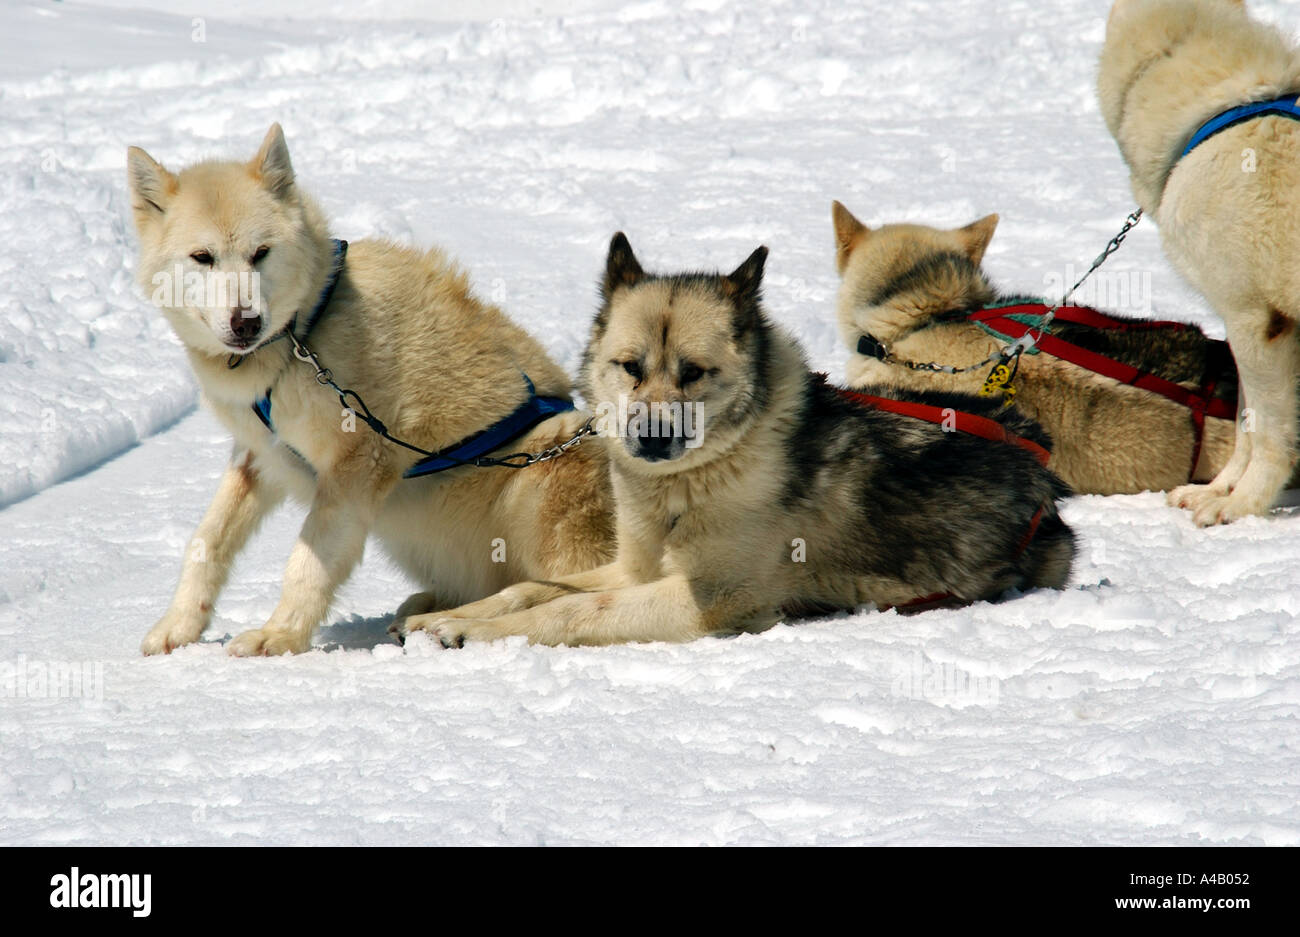 Husky Hunde ziehen Schlitten auf die Jungfrau in der Schweiz  Stockfotografie - Alamy